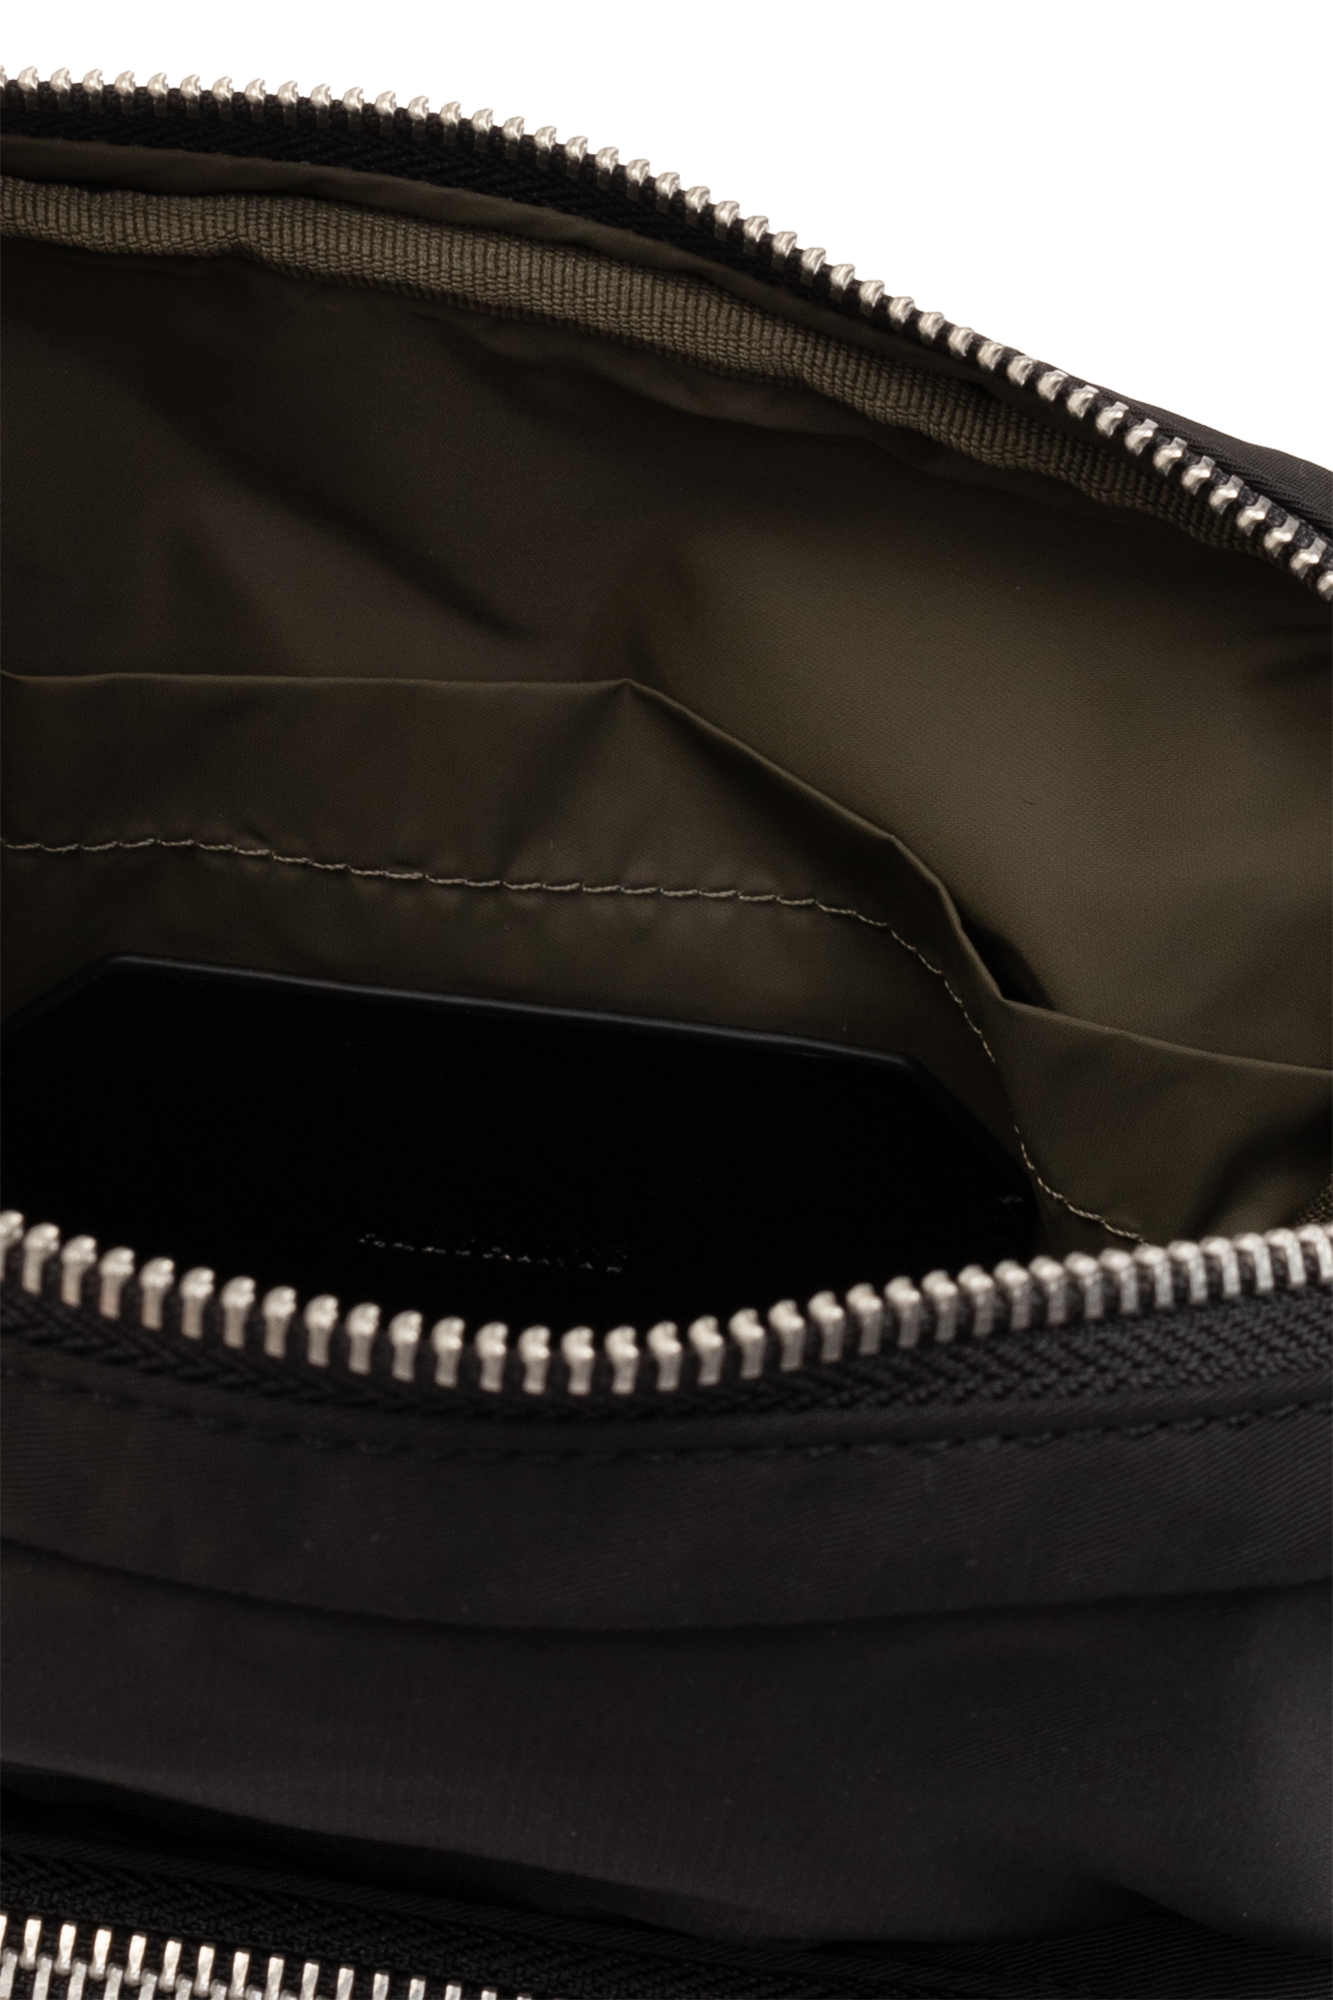 AllSaints ‘Steppe’ one-shoulder backpack